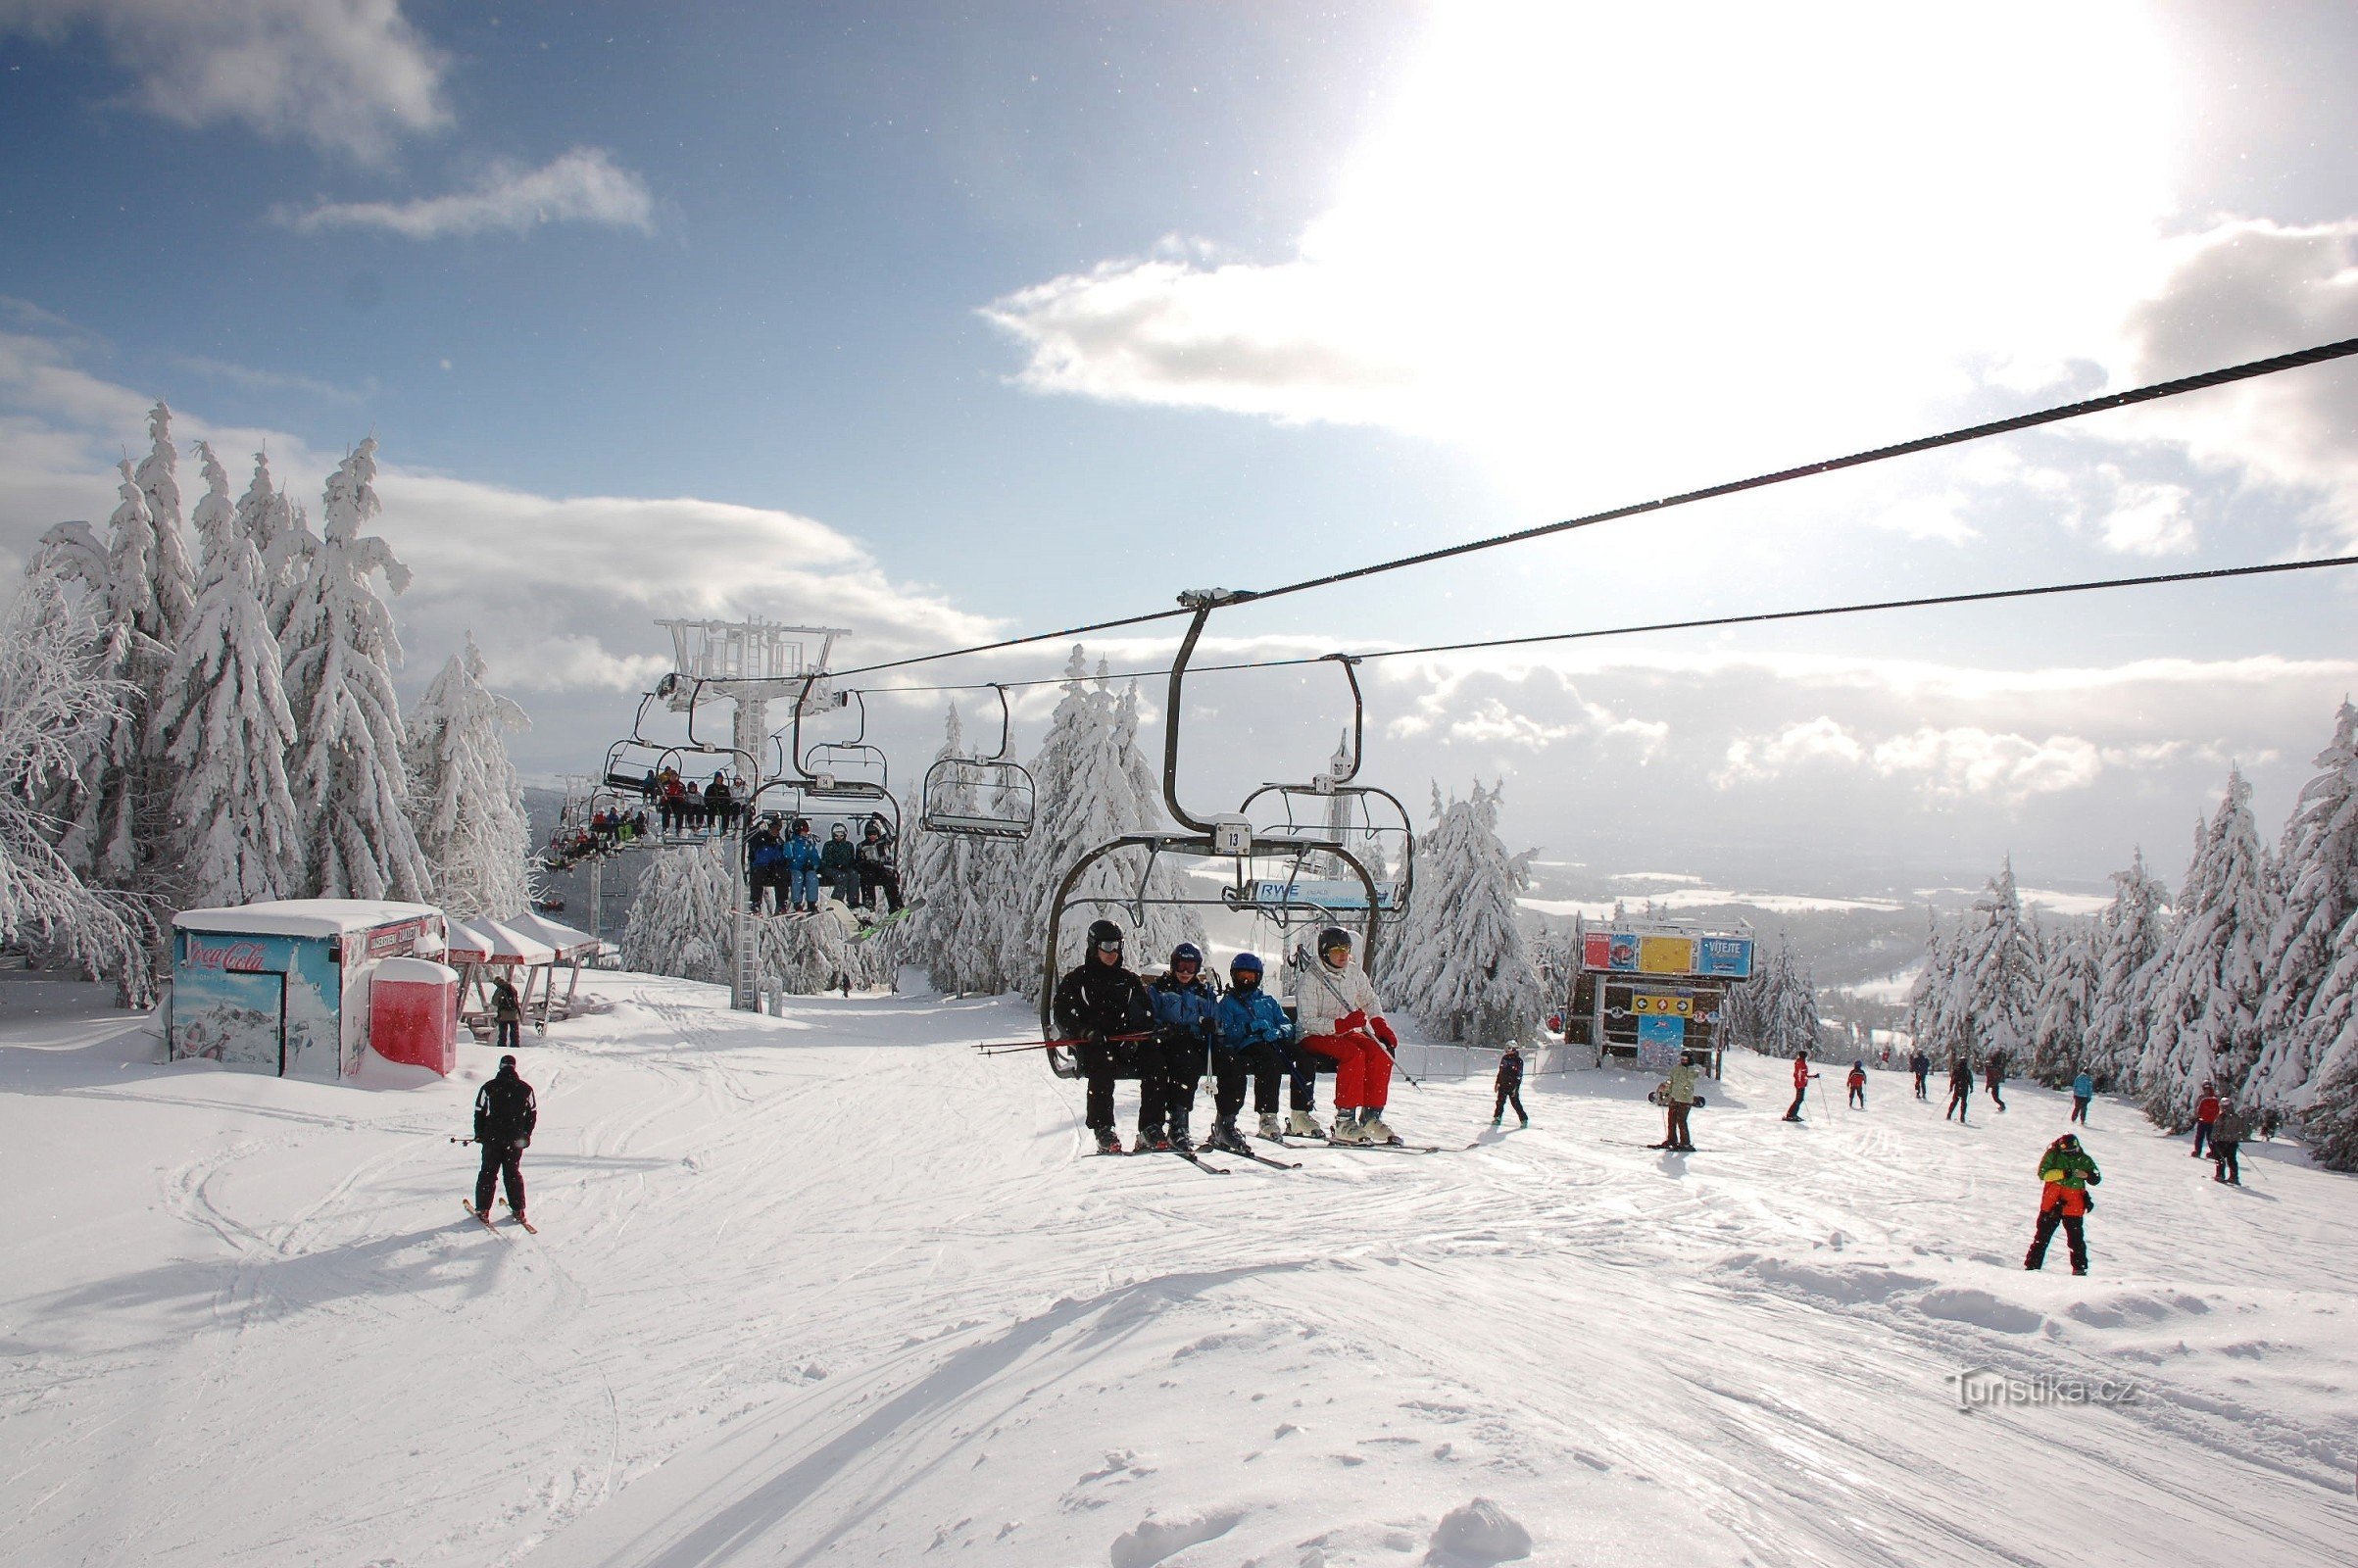 Ski center Říčky - una moderna stazione sciistica nel cuore dei Monti dell'Aquila